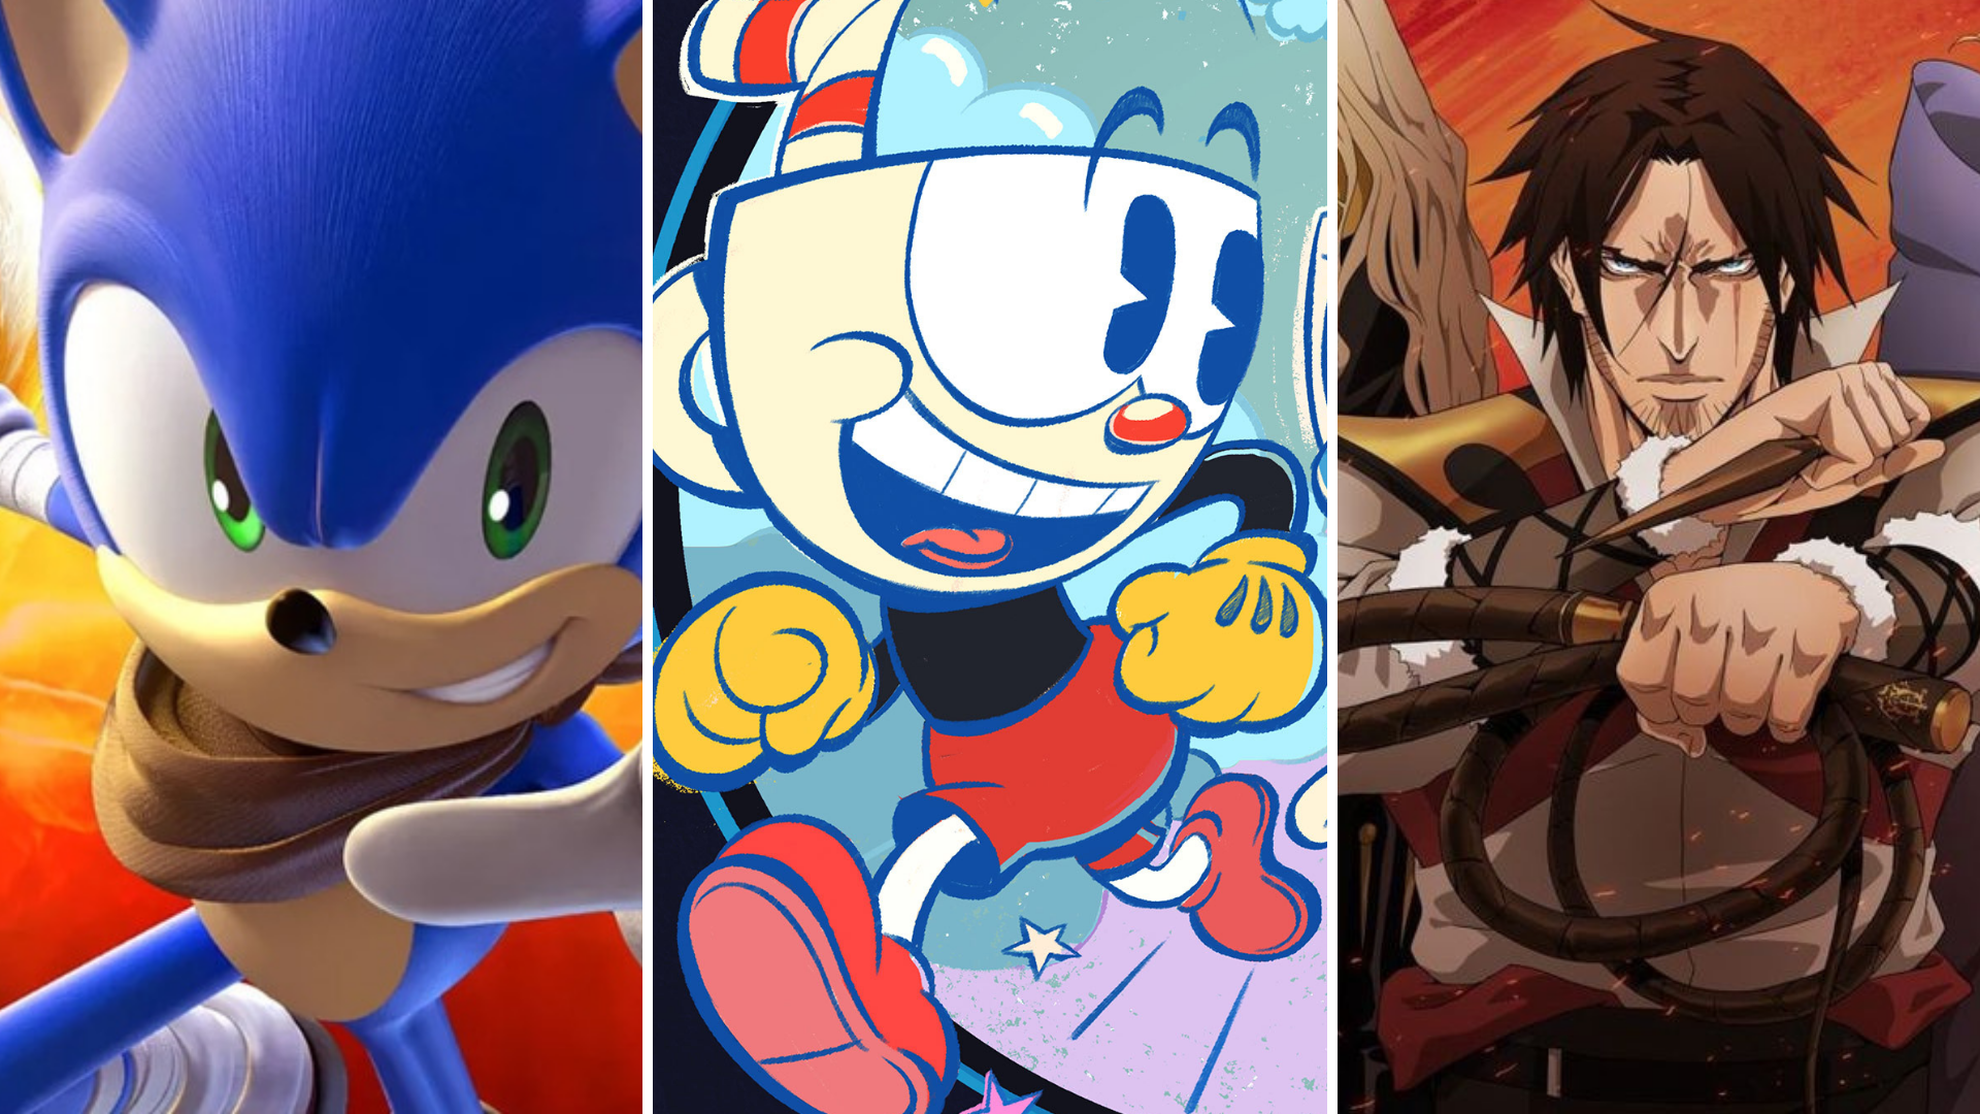 Sonic Prime  Netflix divulga cena inédita da animação